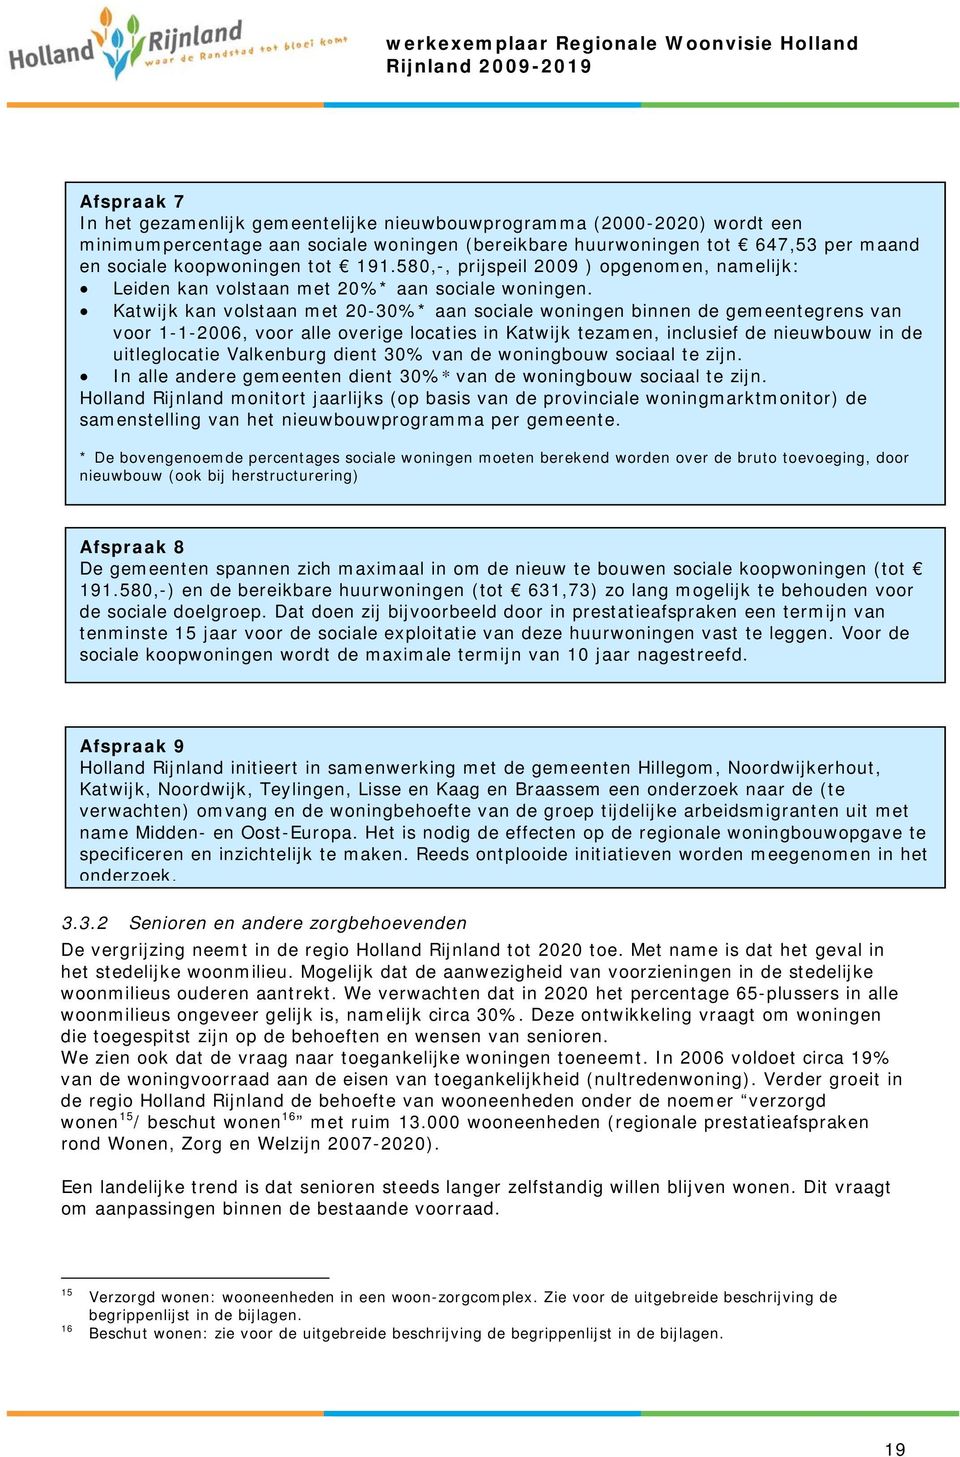 Katwijk kan volstaan met 20-30%* aan sociale woningen binnen de gemeentegrens van voor 1-1-2006, voor alle overige locaties in Katwijk tezamen, inclusief de nieuwbouw in de uitleglocatie Valkenburg